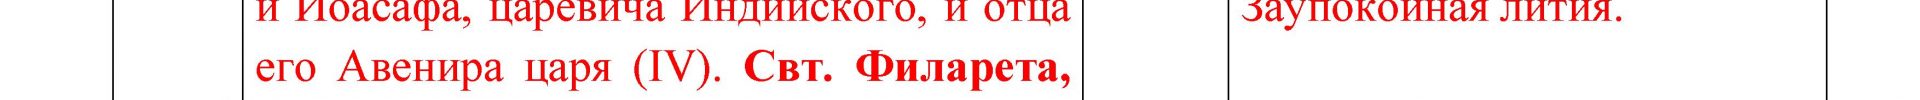 Расписание богослужений Преображенского храма деревни Спас-Каменка на декабрь 2018 года